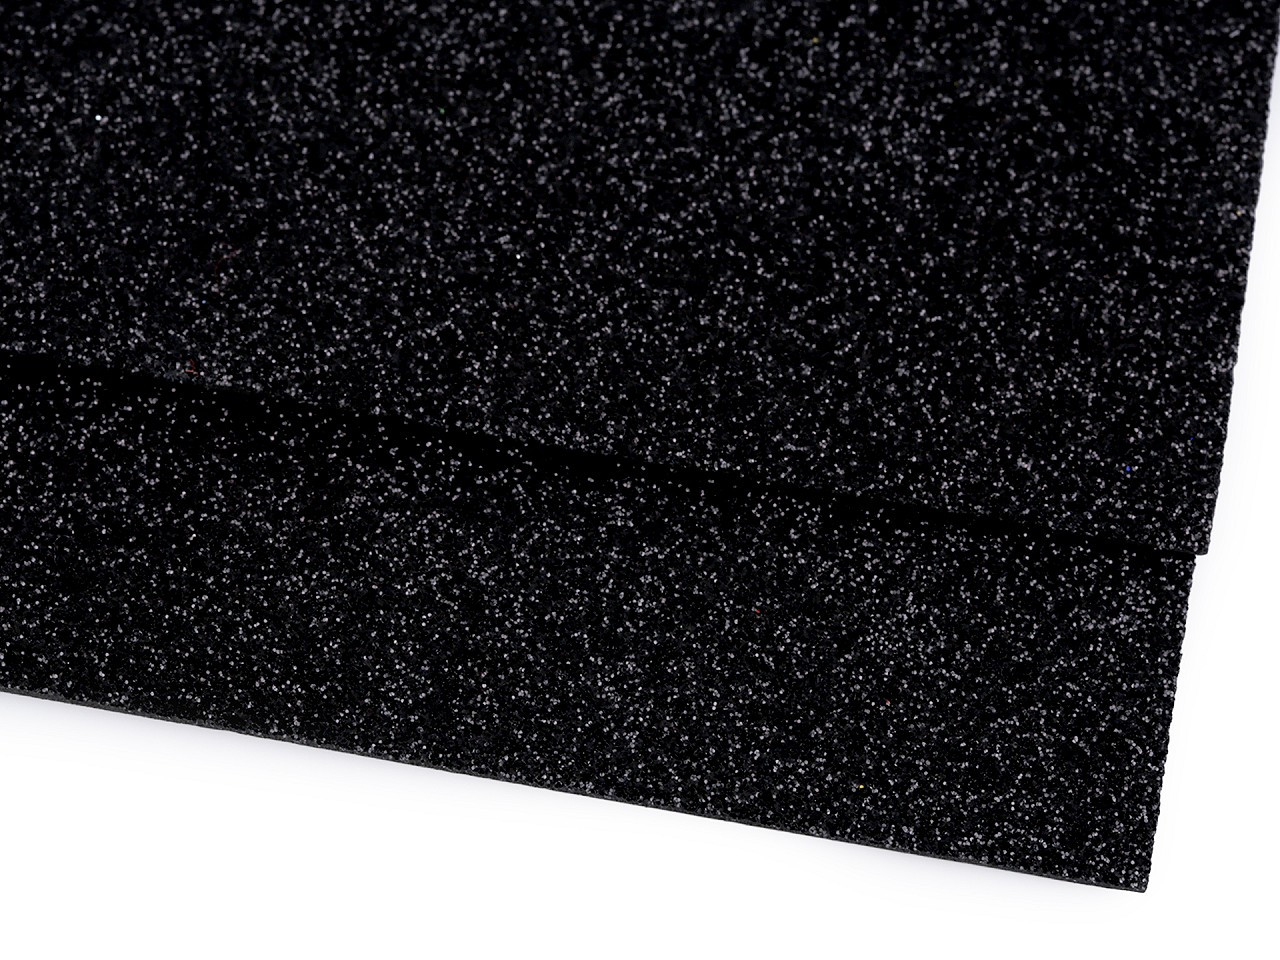 Pěnová guma Moosgummi s glitry 20x30 cm, barva 19 černá